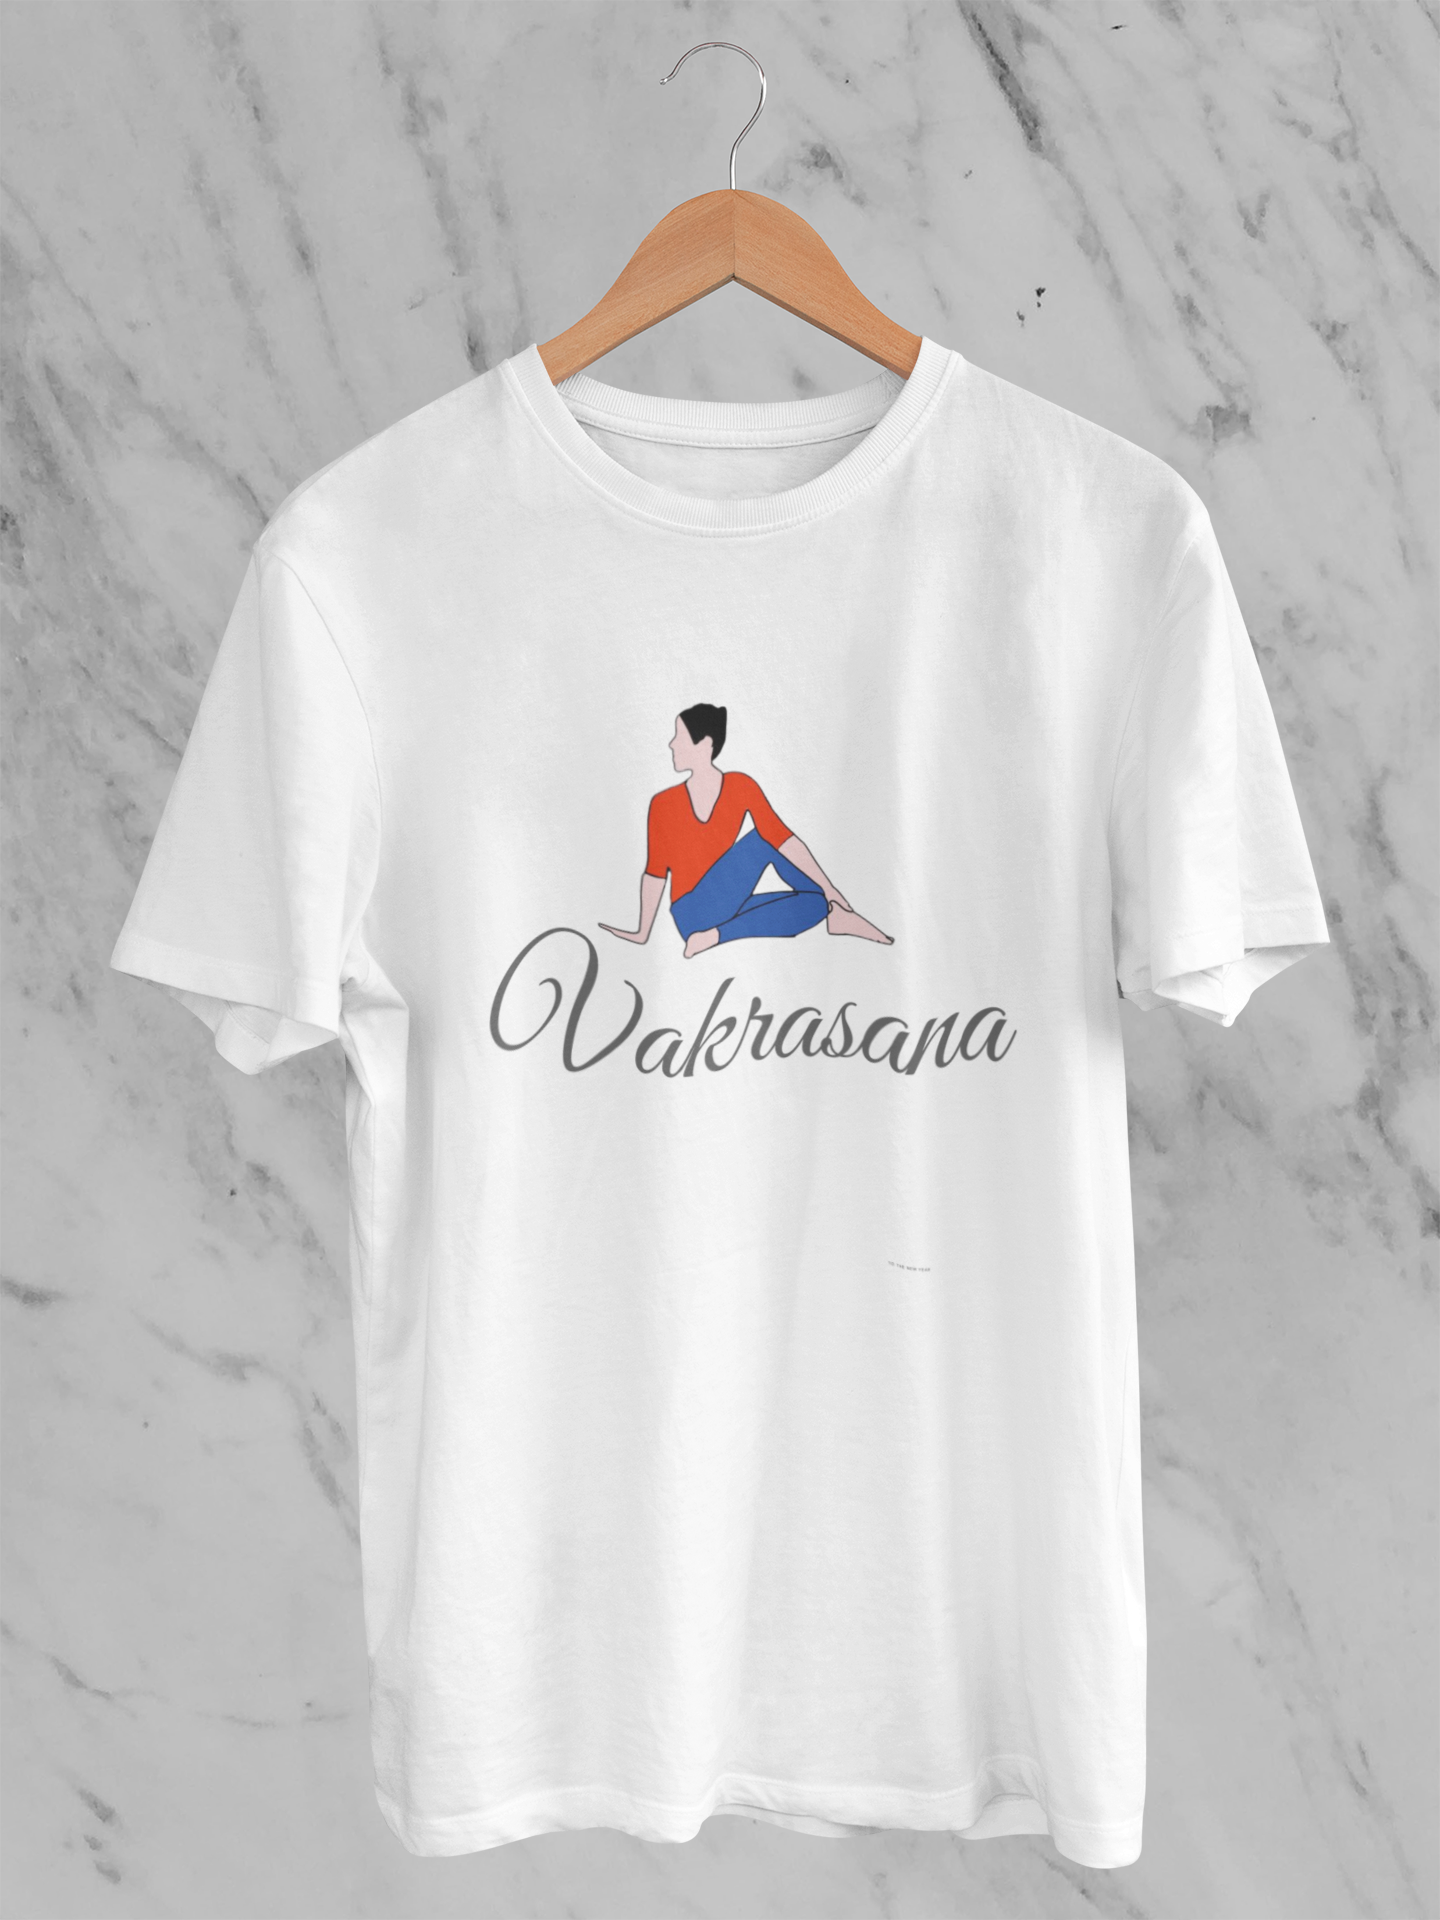 Vakrasana yoga  shirt for men